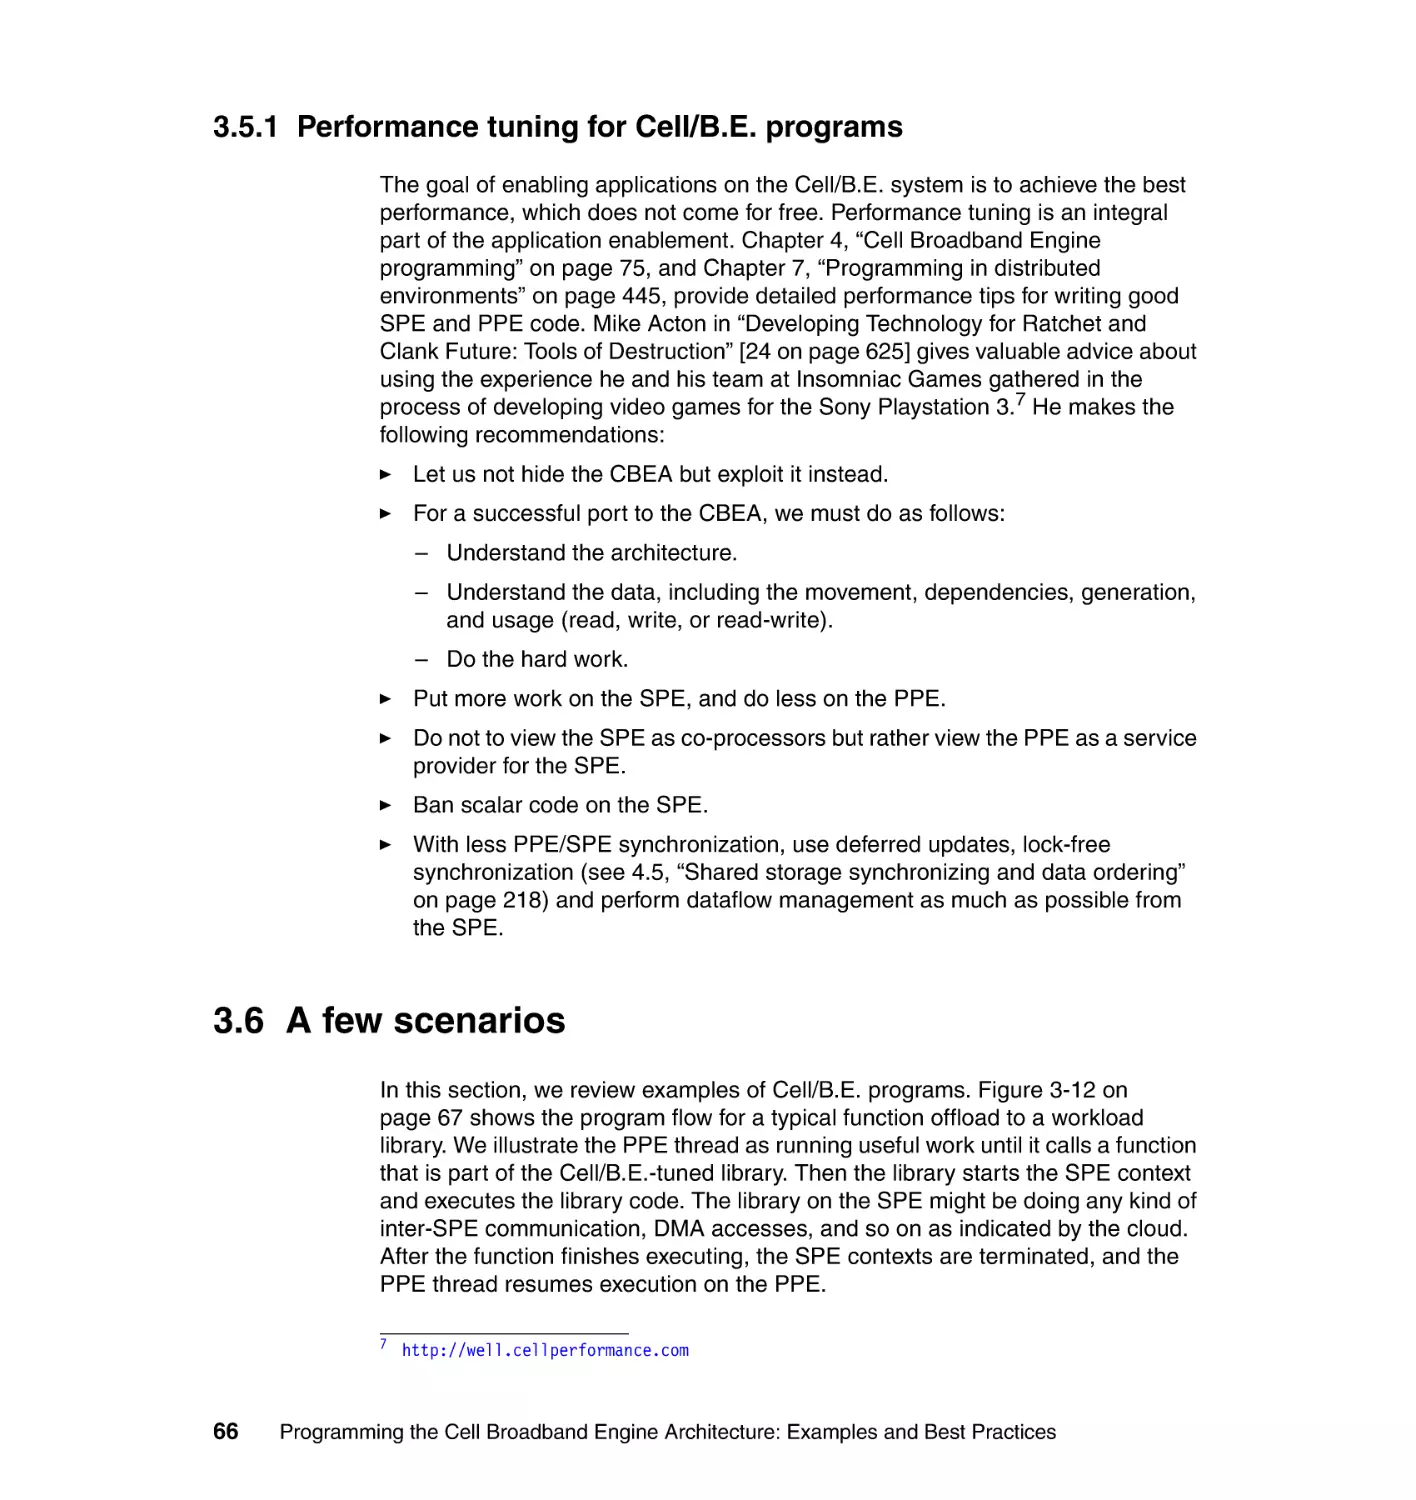 3.5.1 Performance tuning for Cell/B.E. programs
3.6 A few scenarios